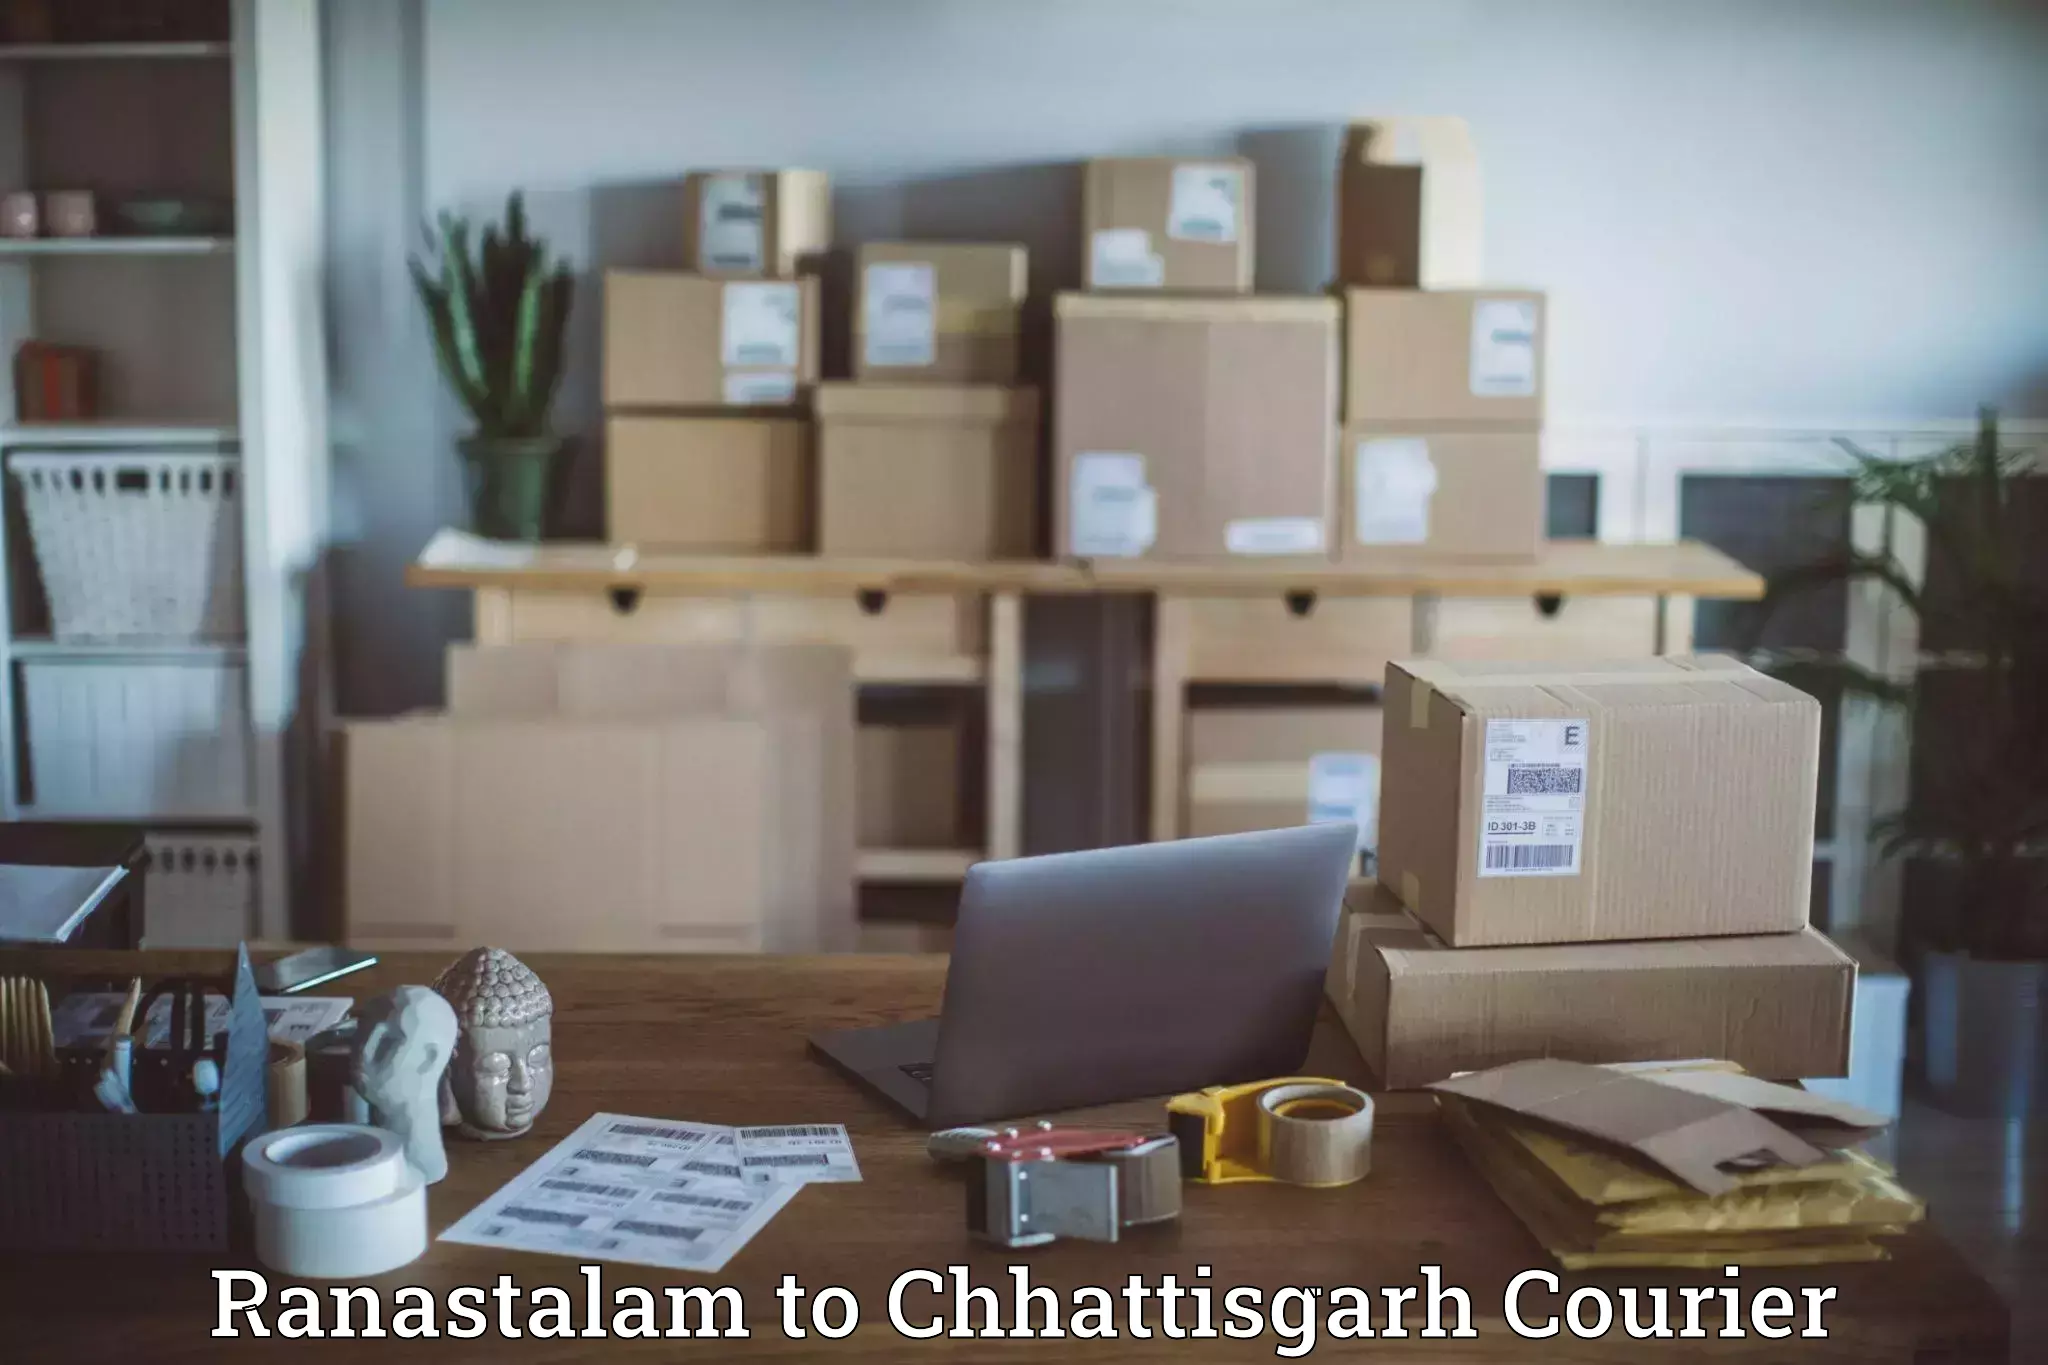 Cargo delivery service Ranastalam to Chhattisgarh